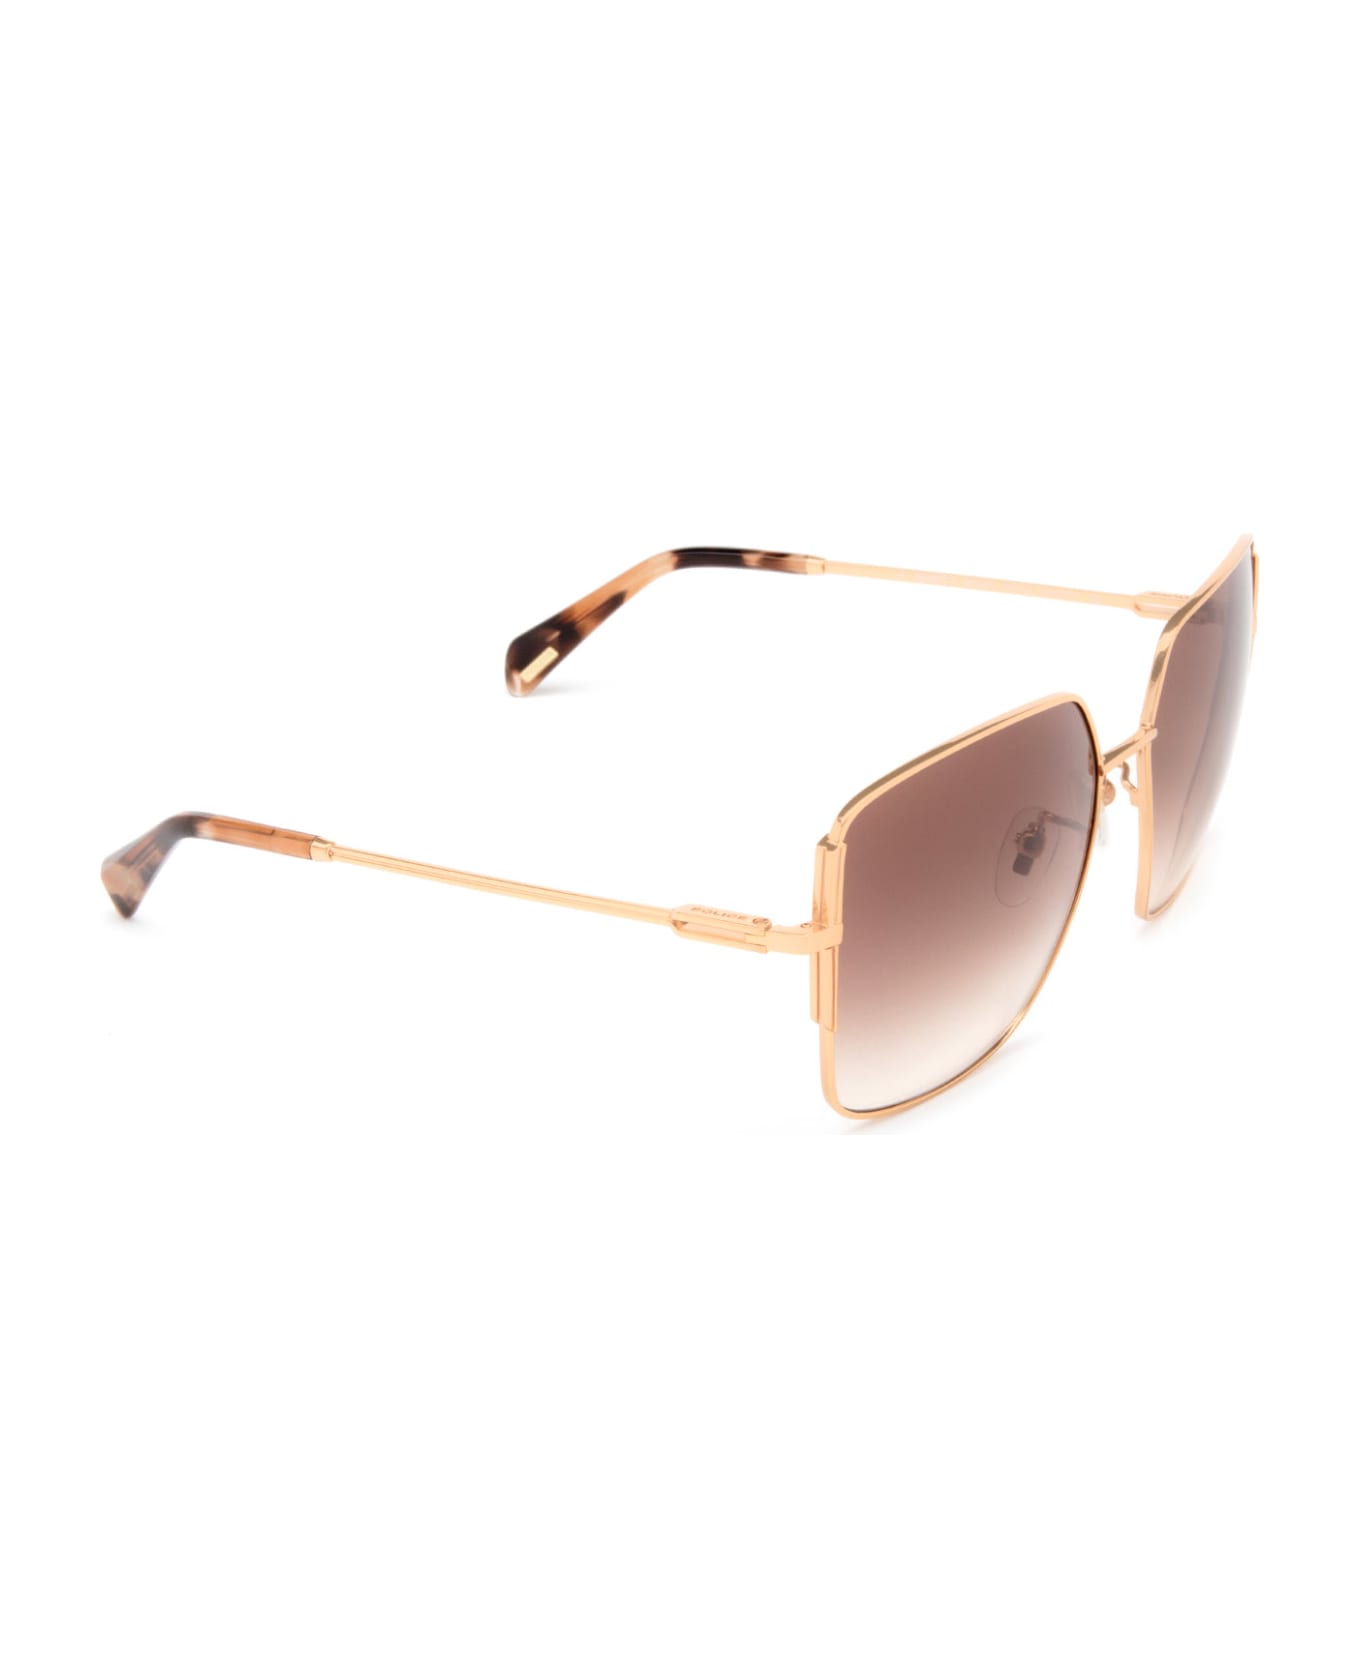 Police Splf34 Copper Gold Sunglasses - Copper Gold